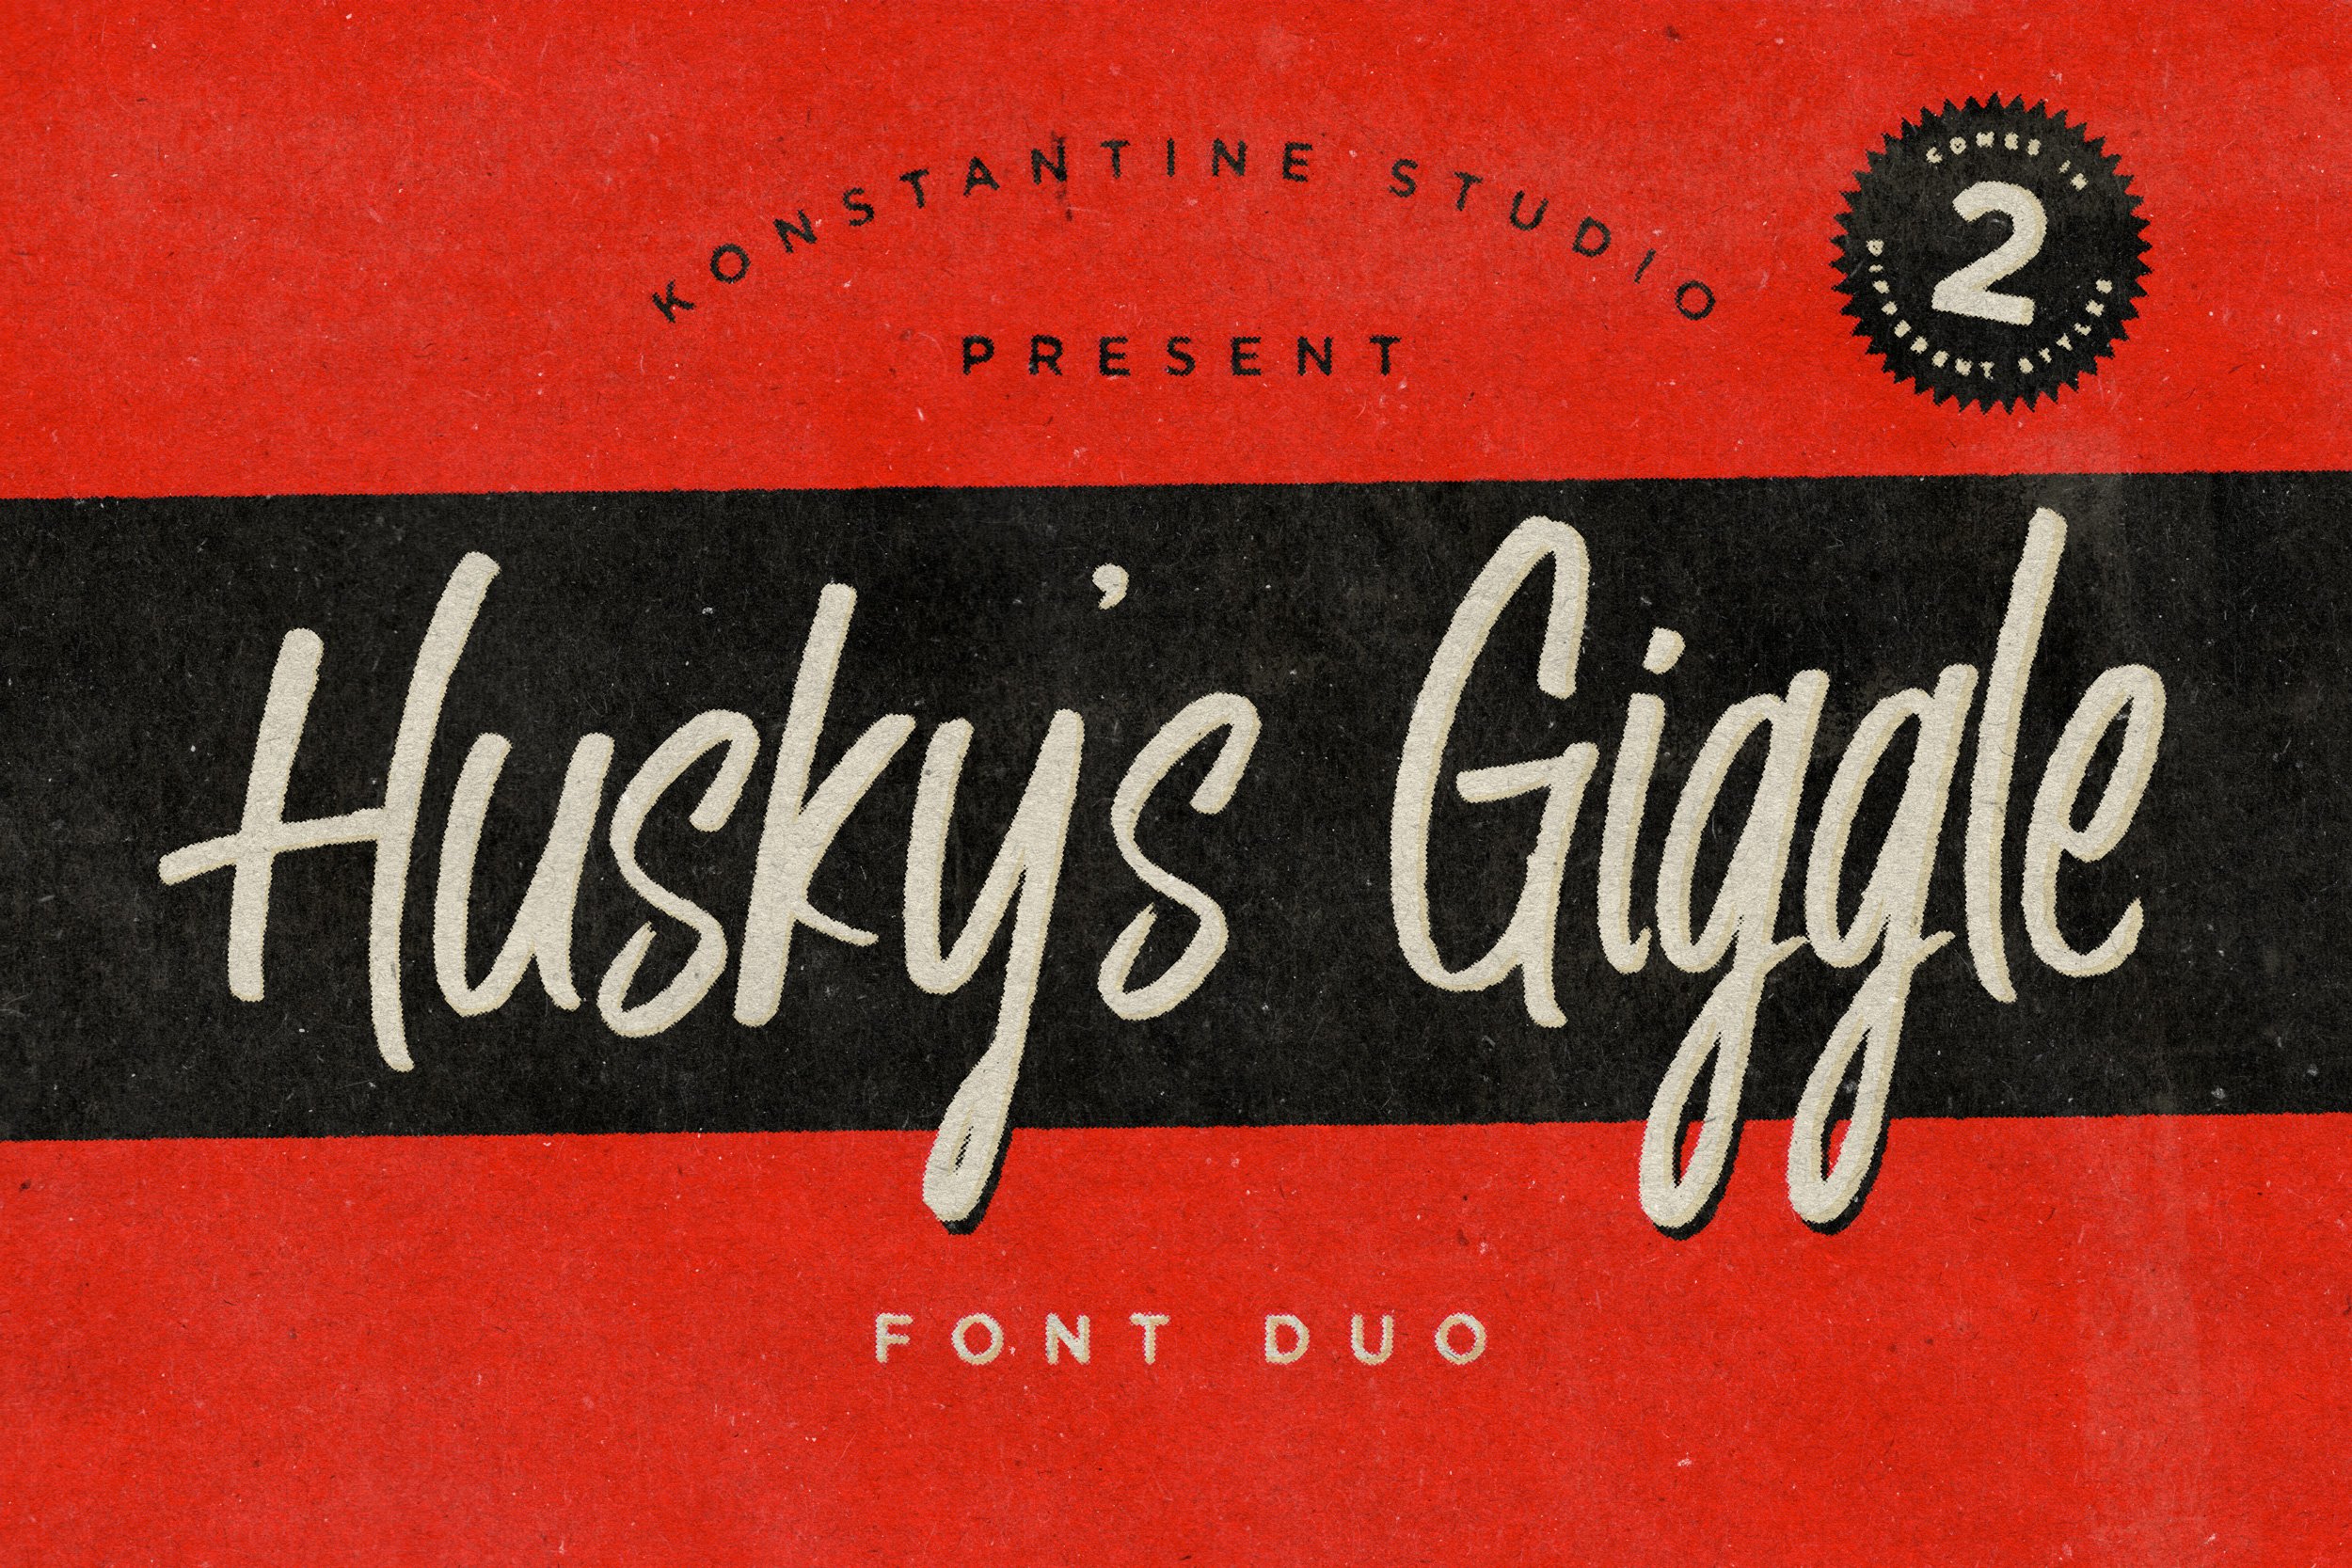 Husky Giggle - Handwriting Font cover image.